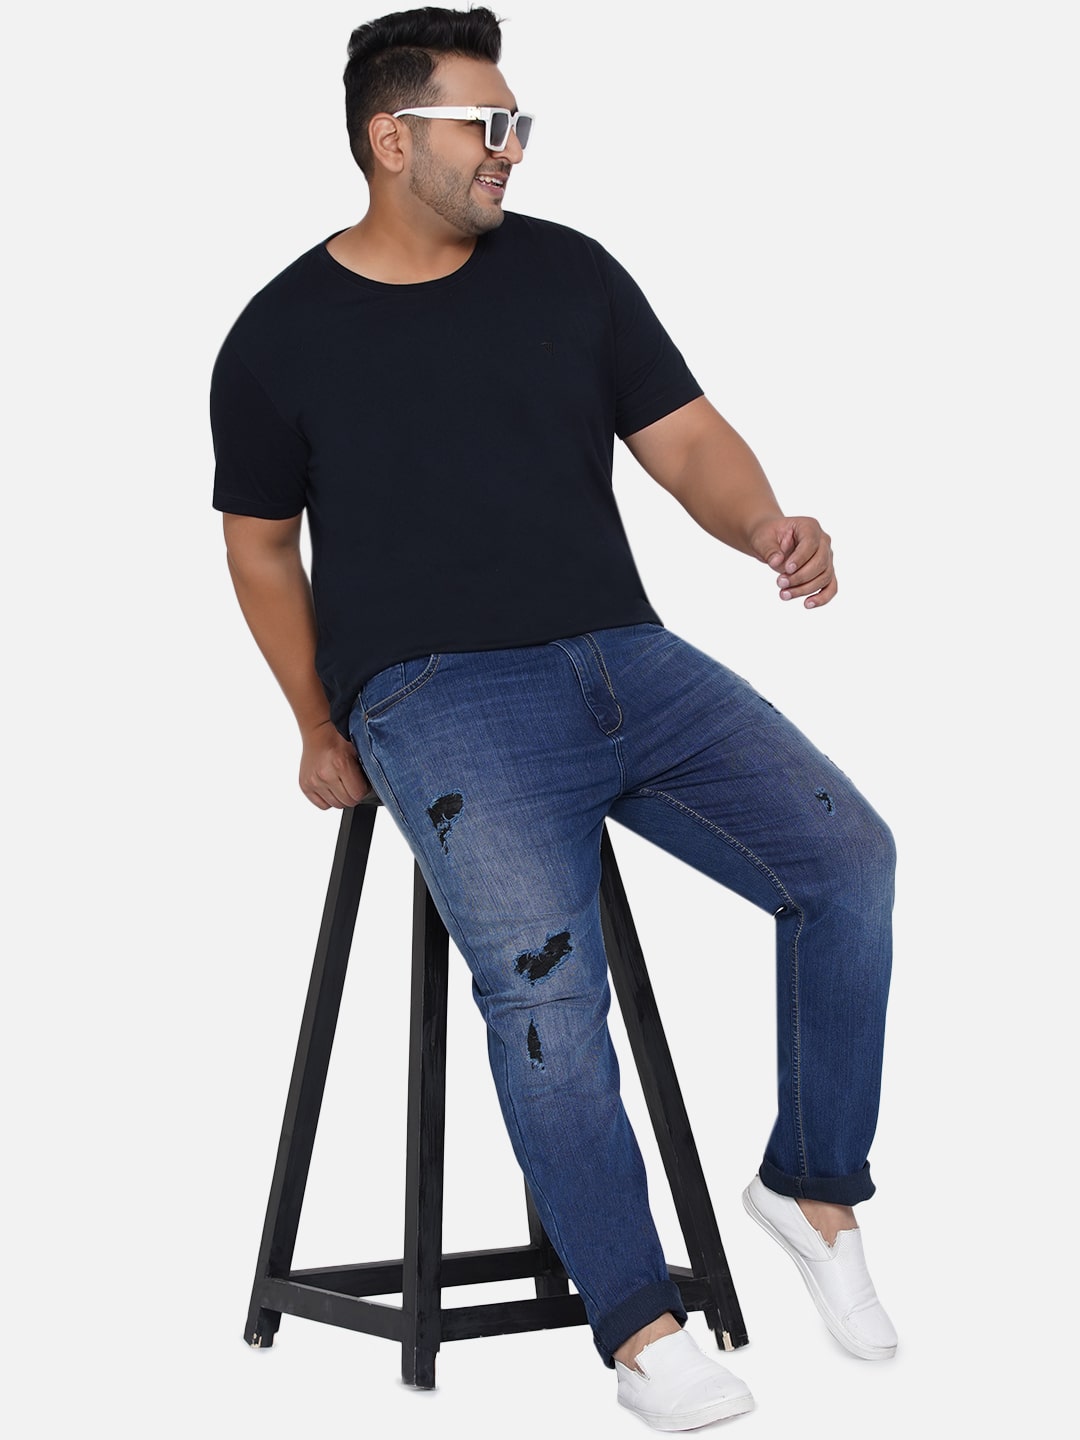 affordables/jeans/EJPJ2050/ejpj2050-1.jpg